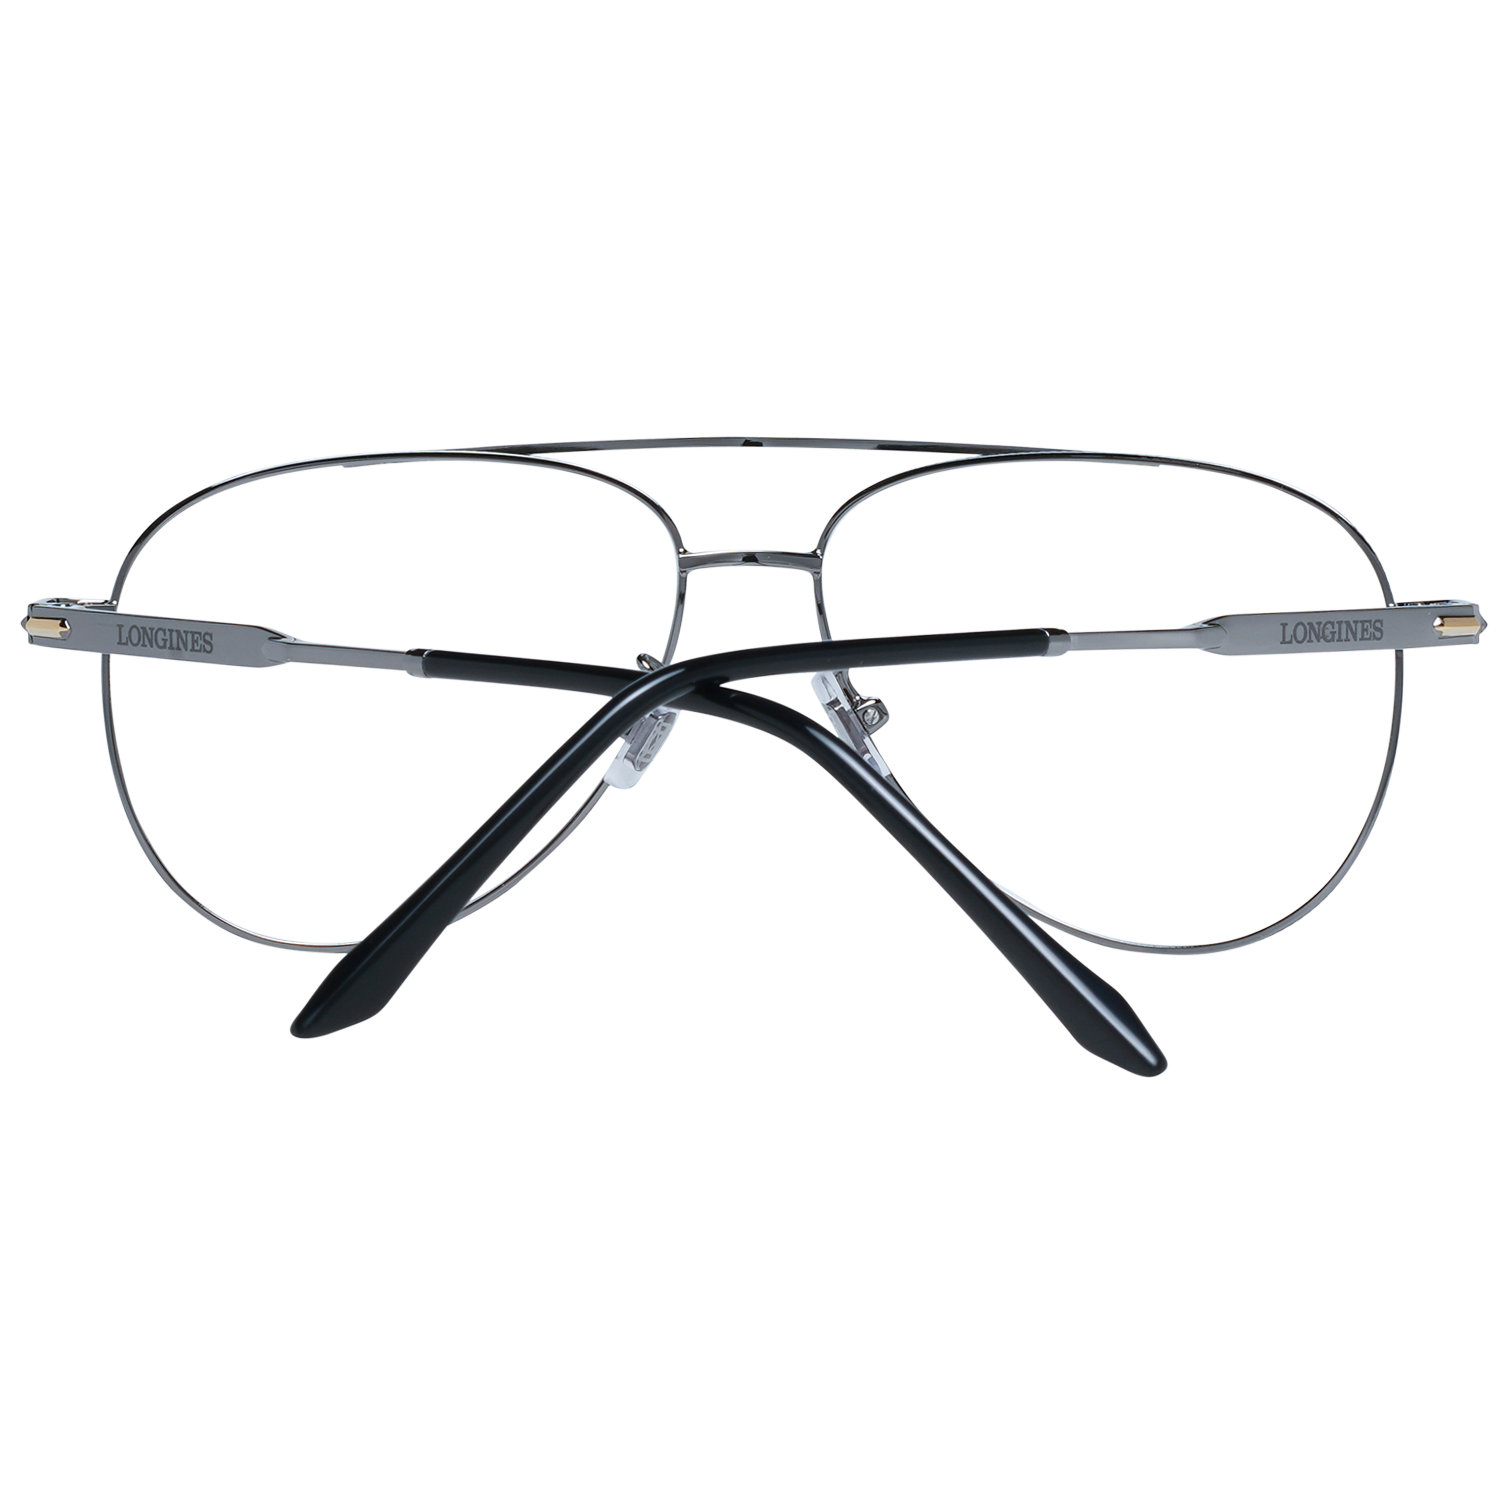 Longines Frames Longines Optical Frame LG5003-H 008 56 Eyeglasses Eyewear UK USA Australia 